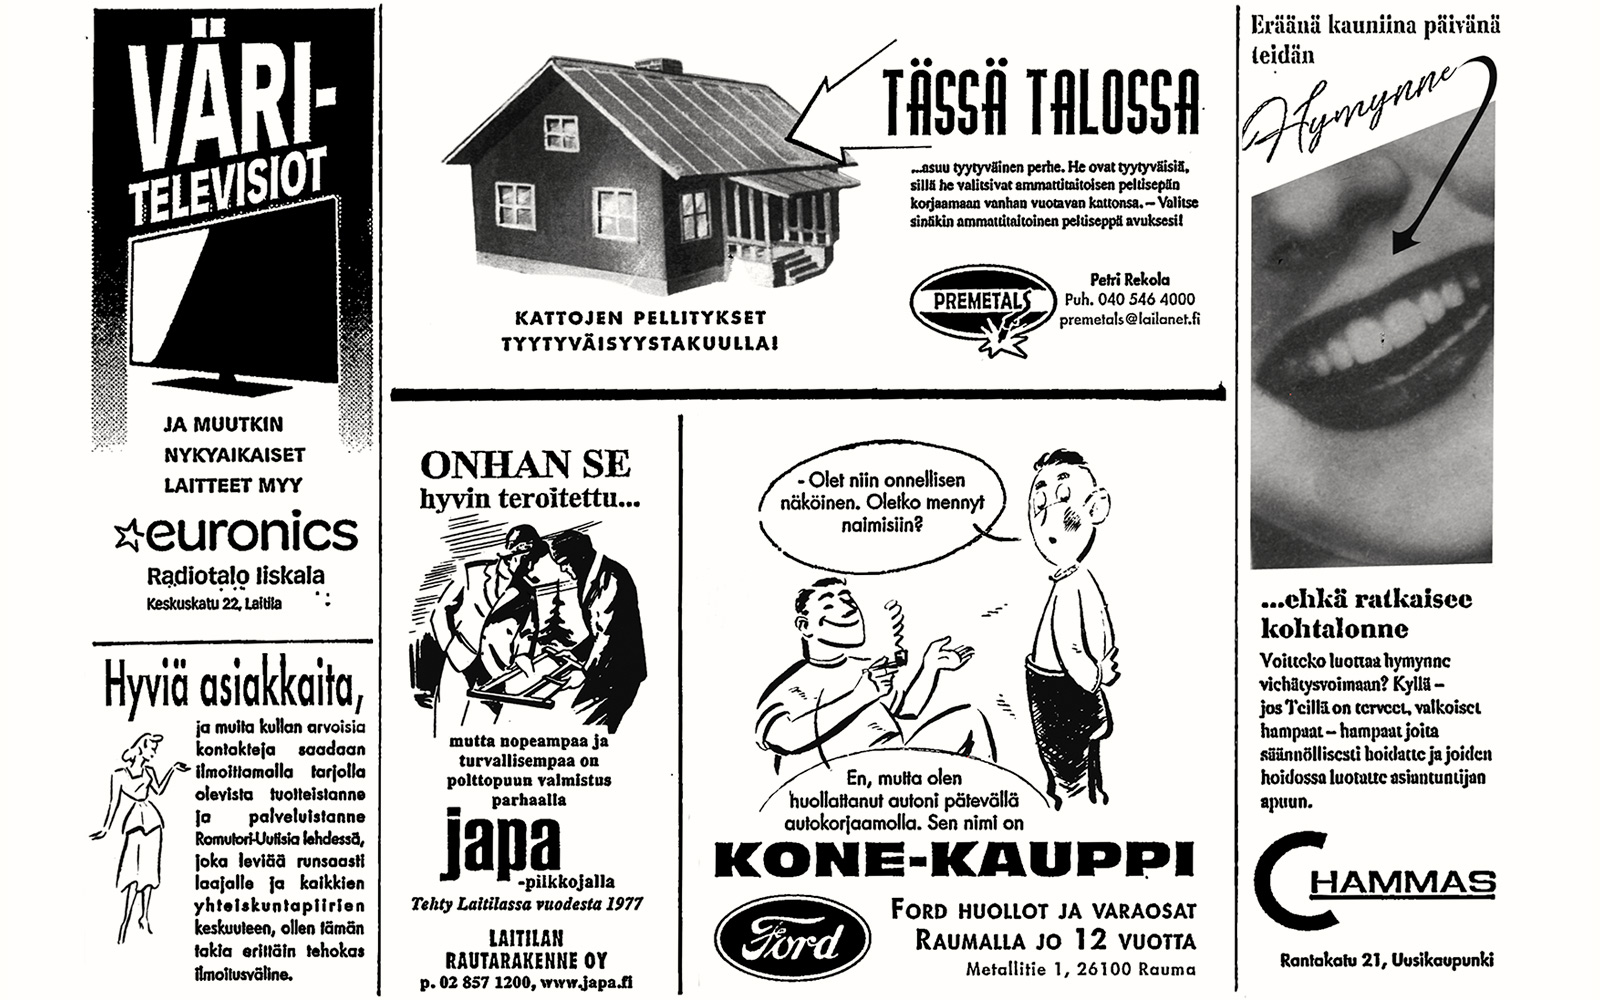 VT8 Romutori Uutisia -lehden mainoksia